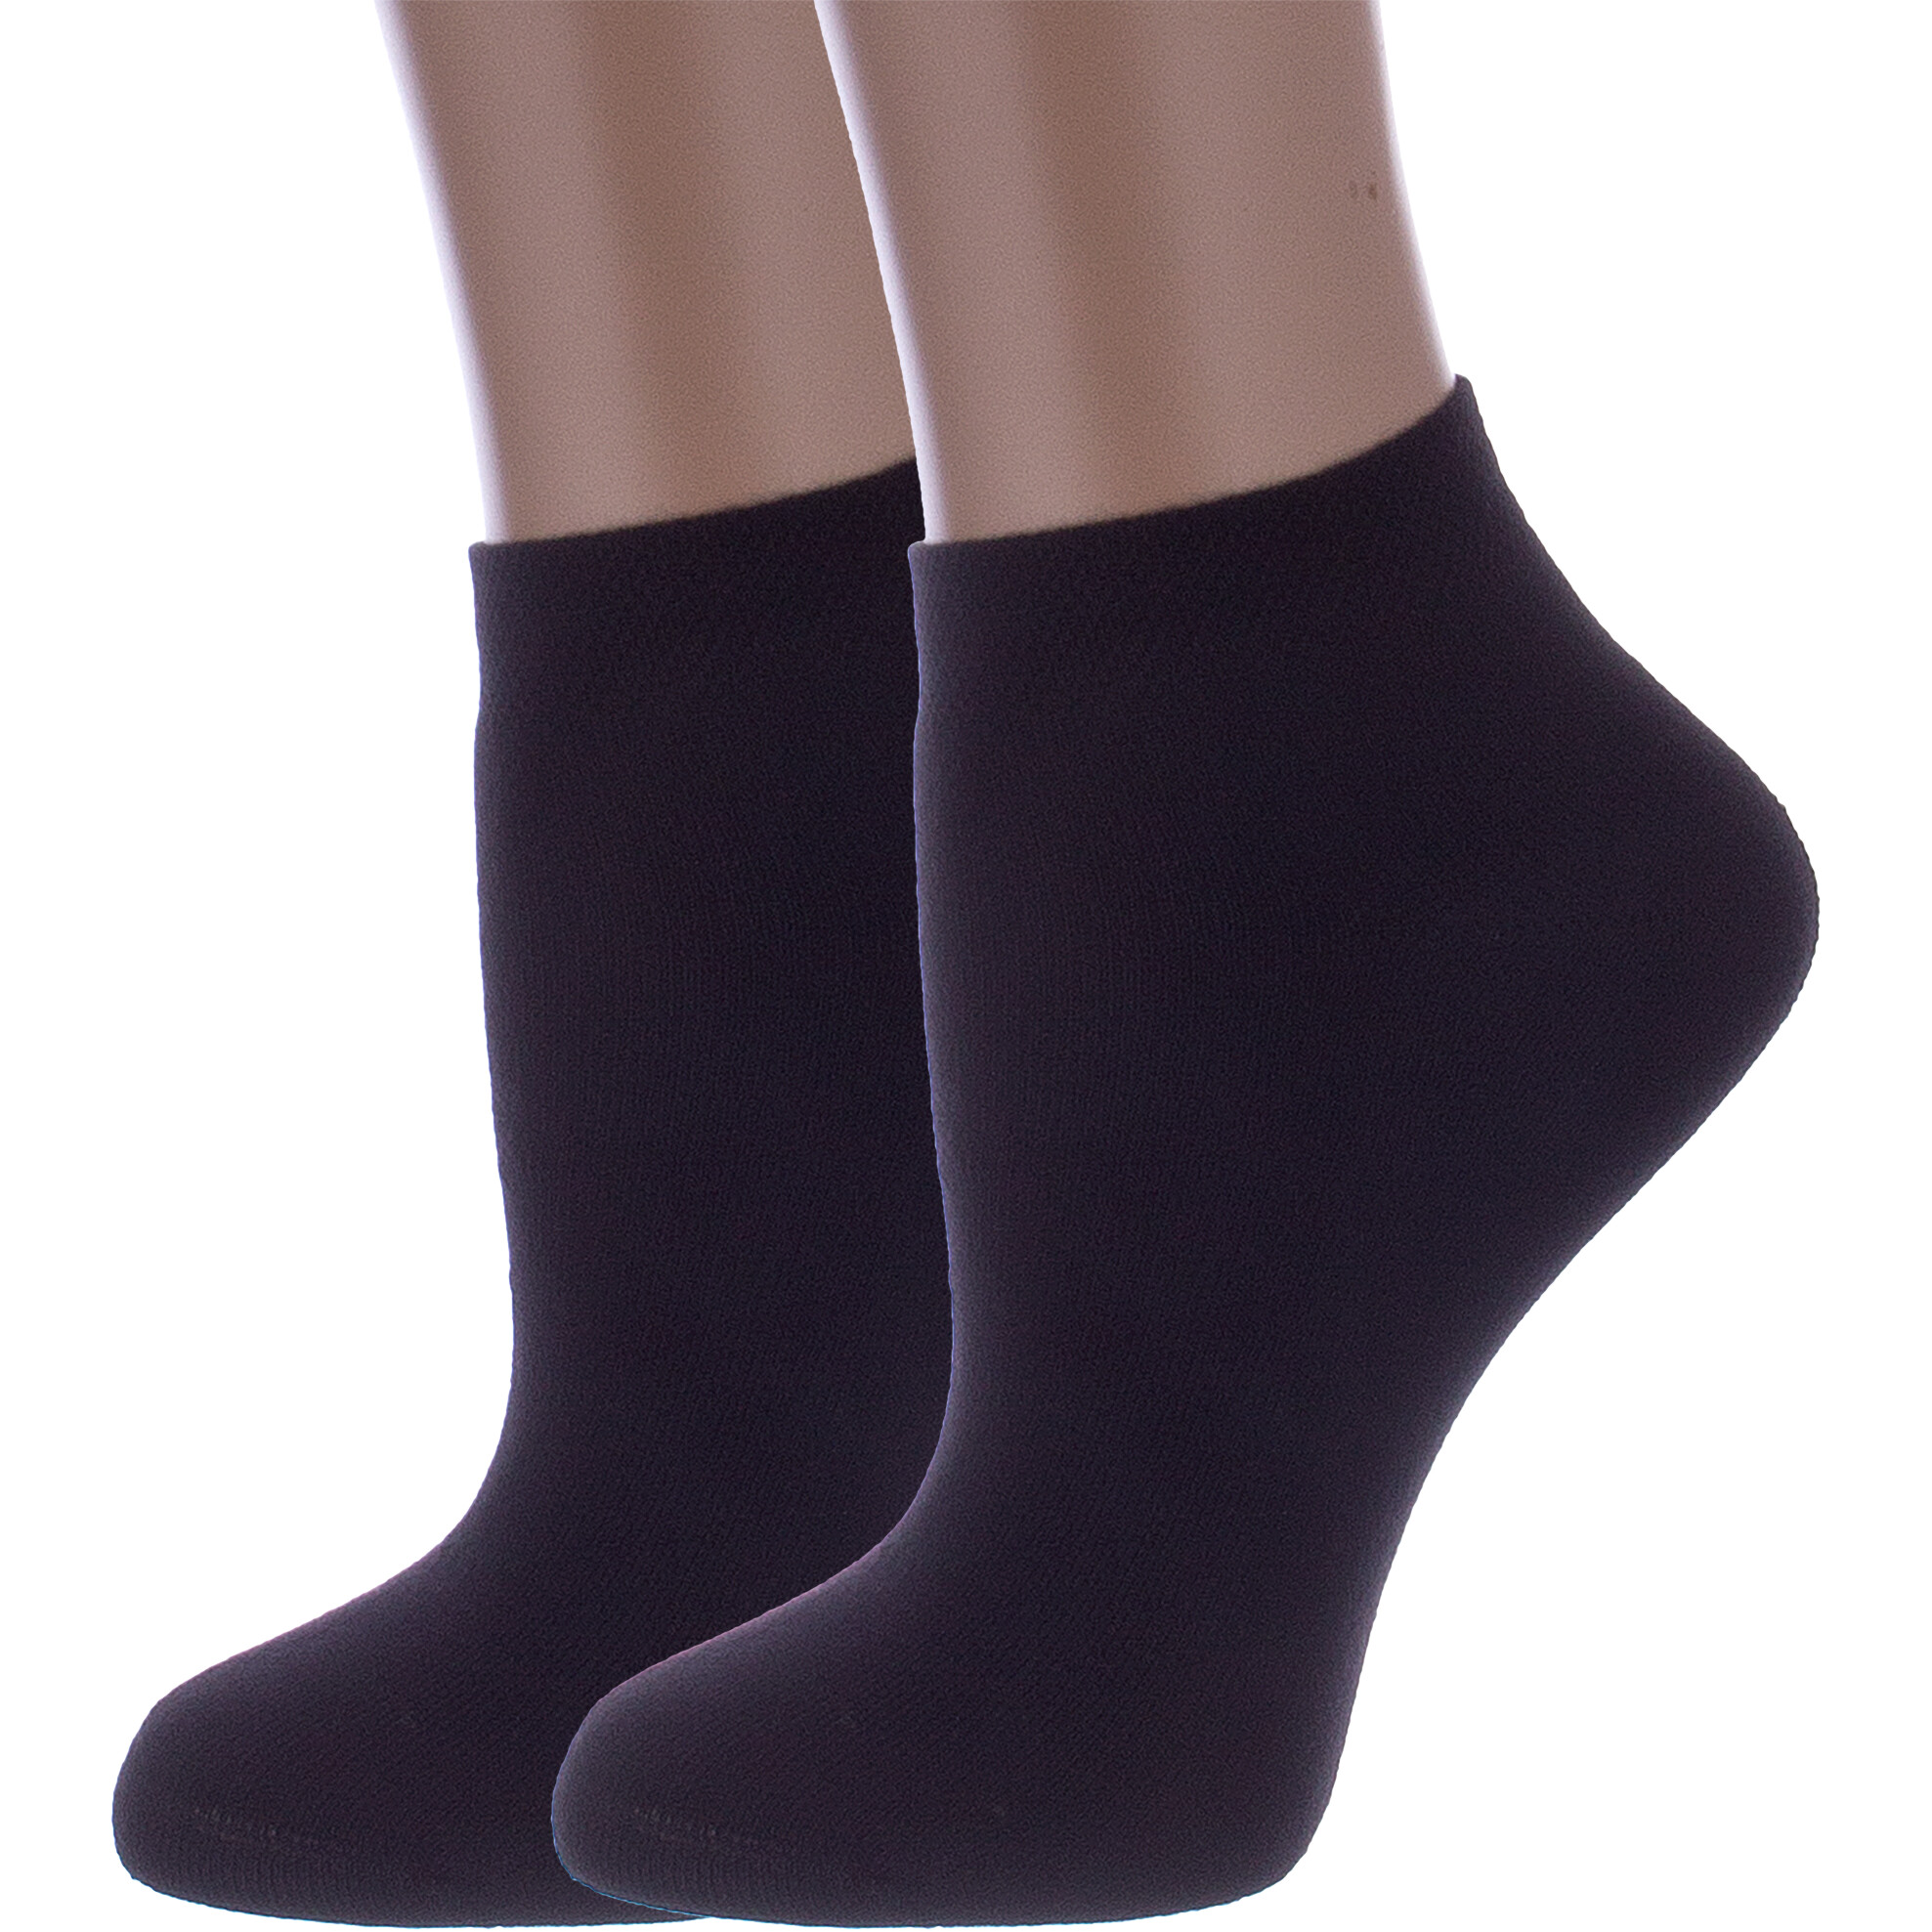 Комплект носков женских Rusocks 2-Ж-2339 черных 23-25 2 пары